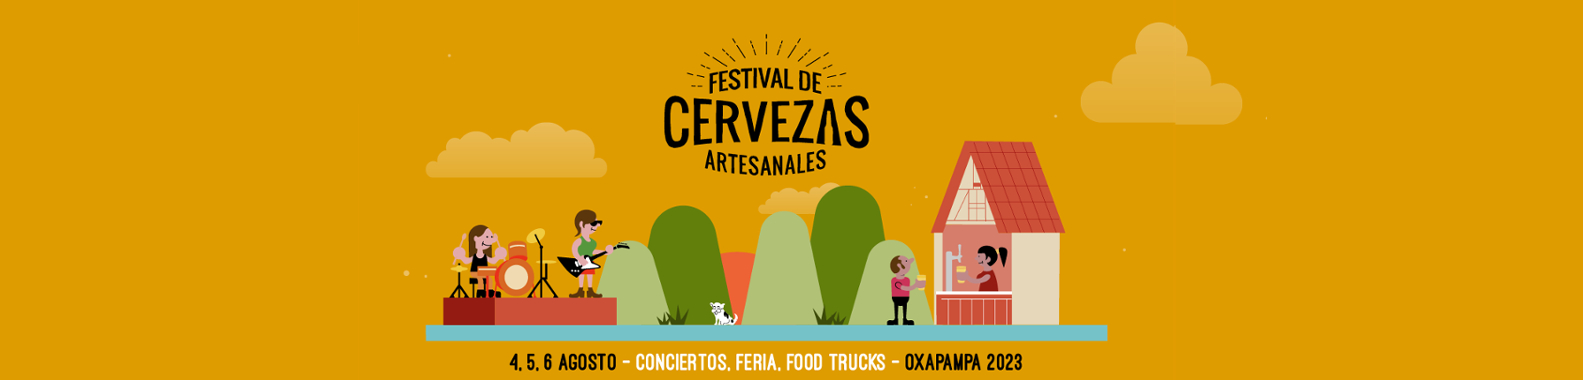 Festival de Cervezas Artesanales Oxapampa